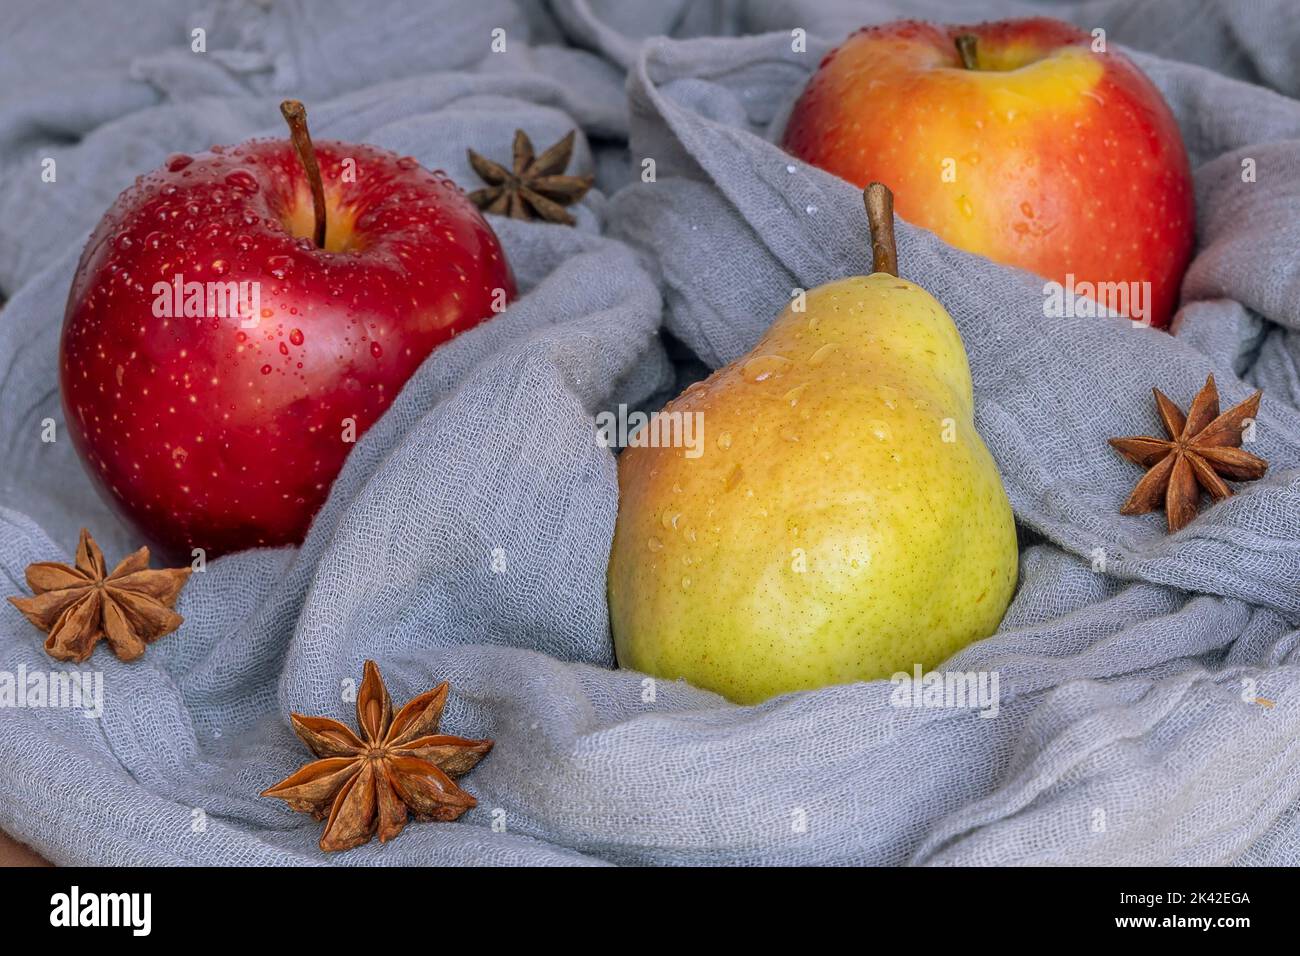 Eine Birne und zwei rote Äpfel, die mit Wassertropfen benetzt sind, sind in einen grauen Schal mit Sternanisgestein gewickelt Stockfoto